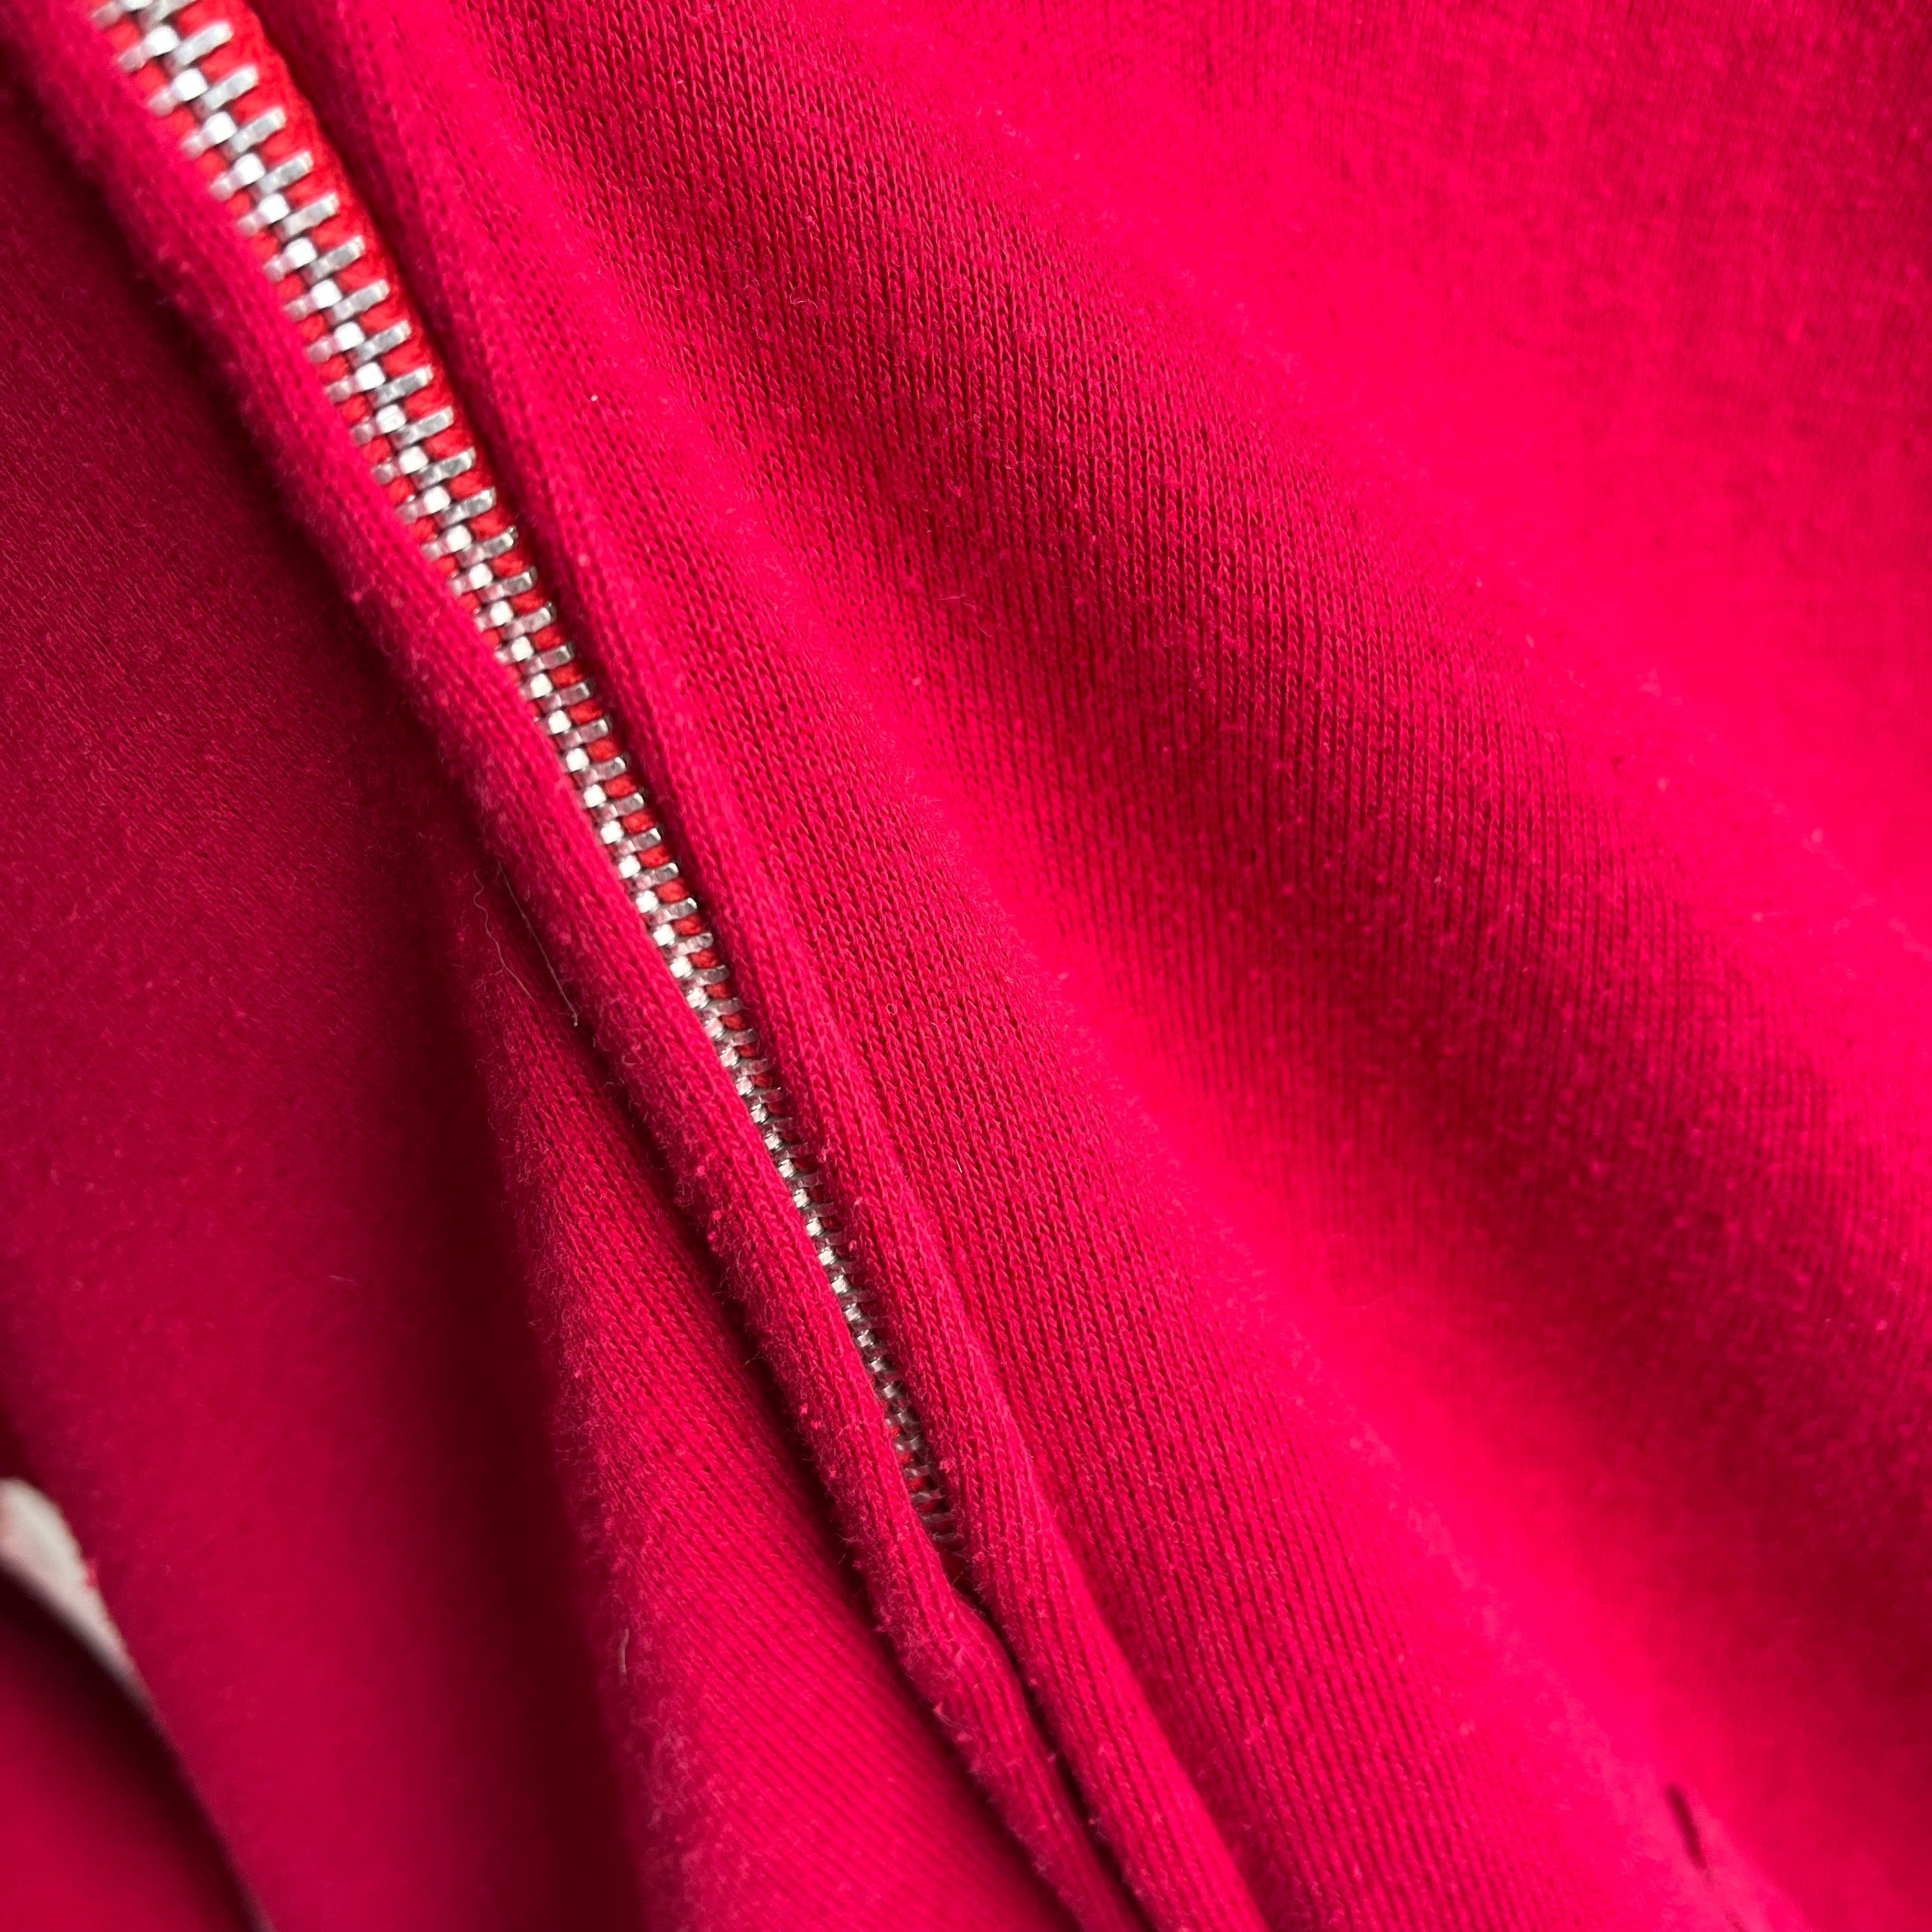 1970s Red/Magenta Zip Up Hoodie By Sportswear